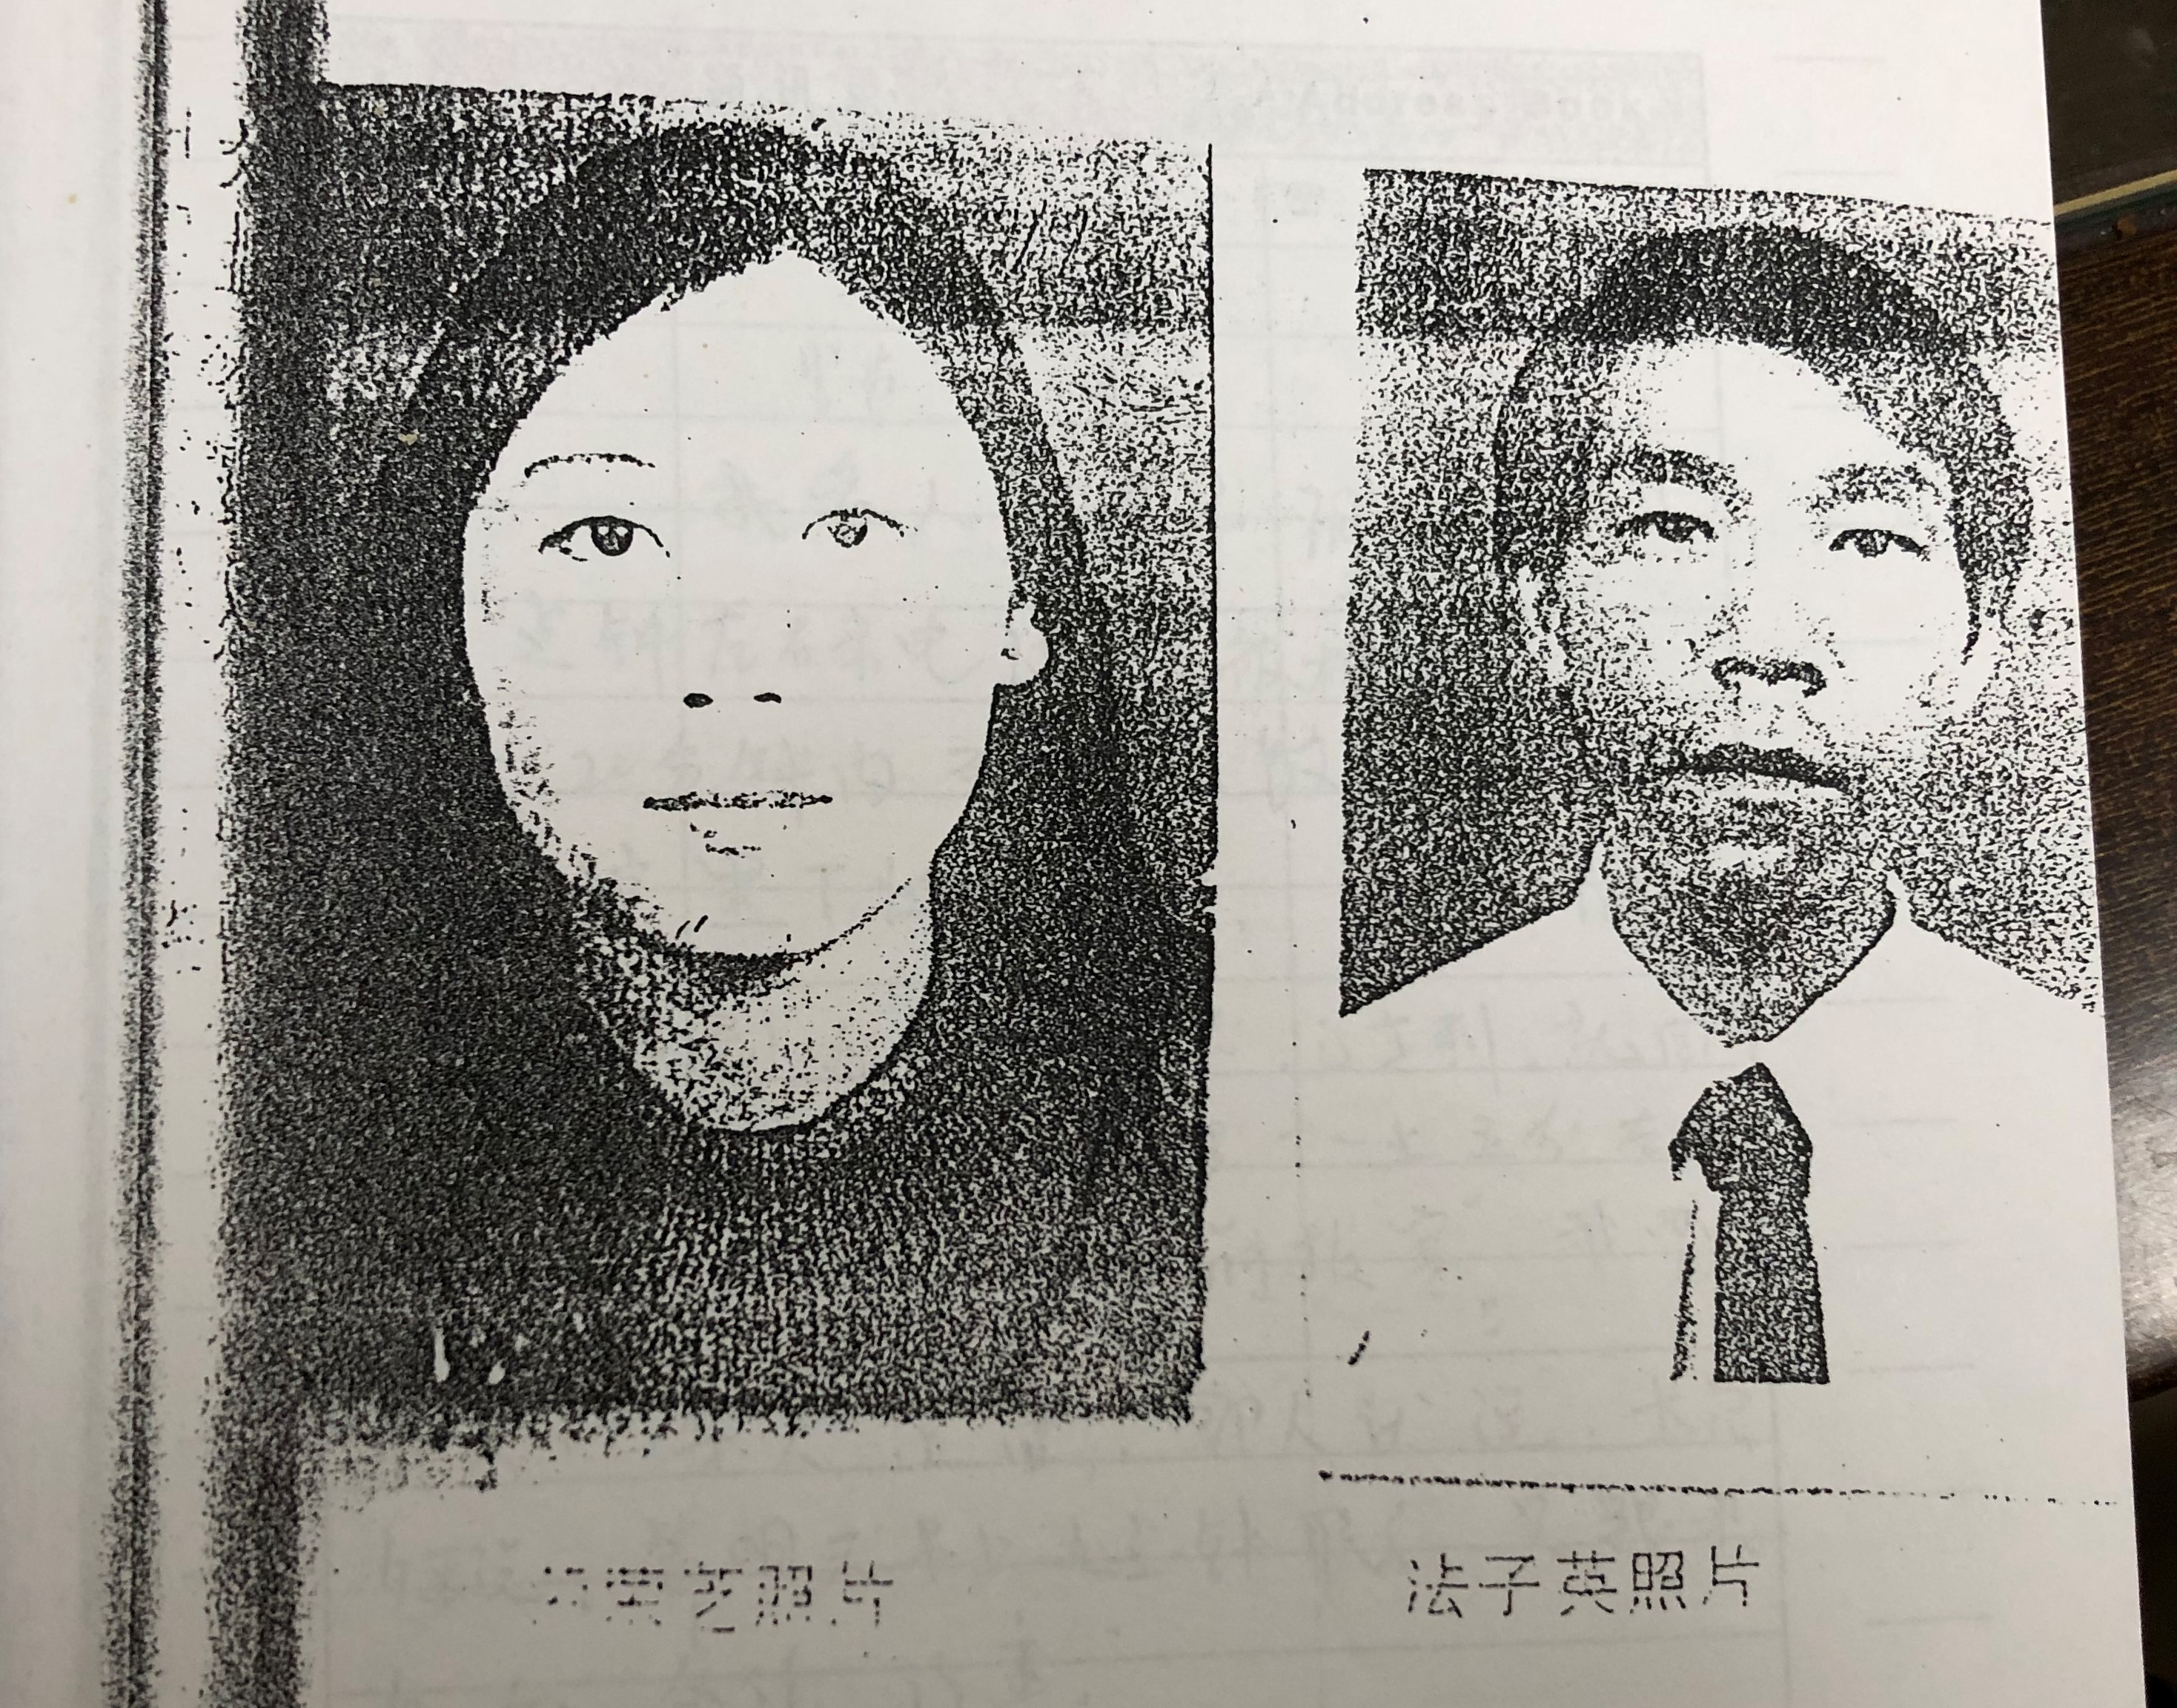 百香果女孩案凶手杨光毅被执行死刑 受害者妈妈表示“女儿终于可以安息了”-荆楚网-湖北日报网